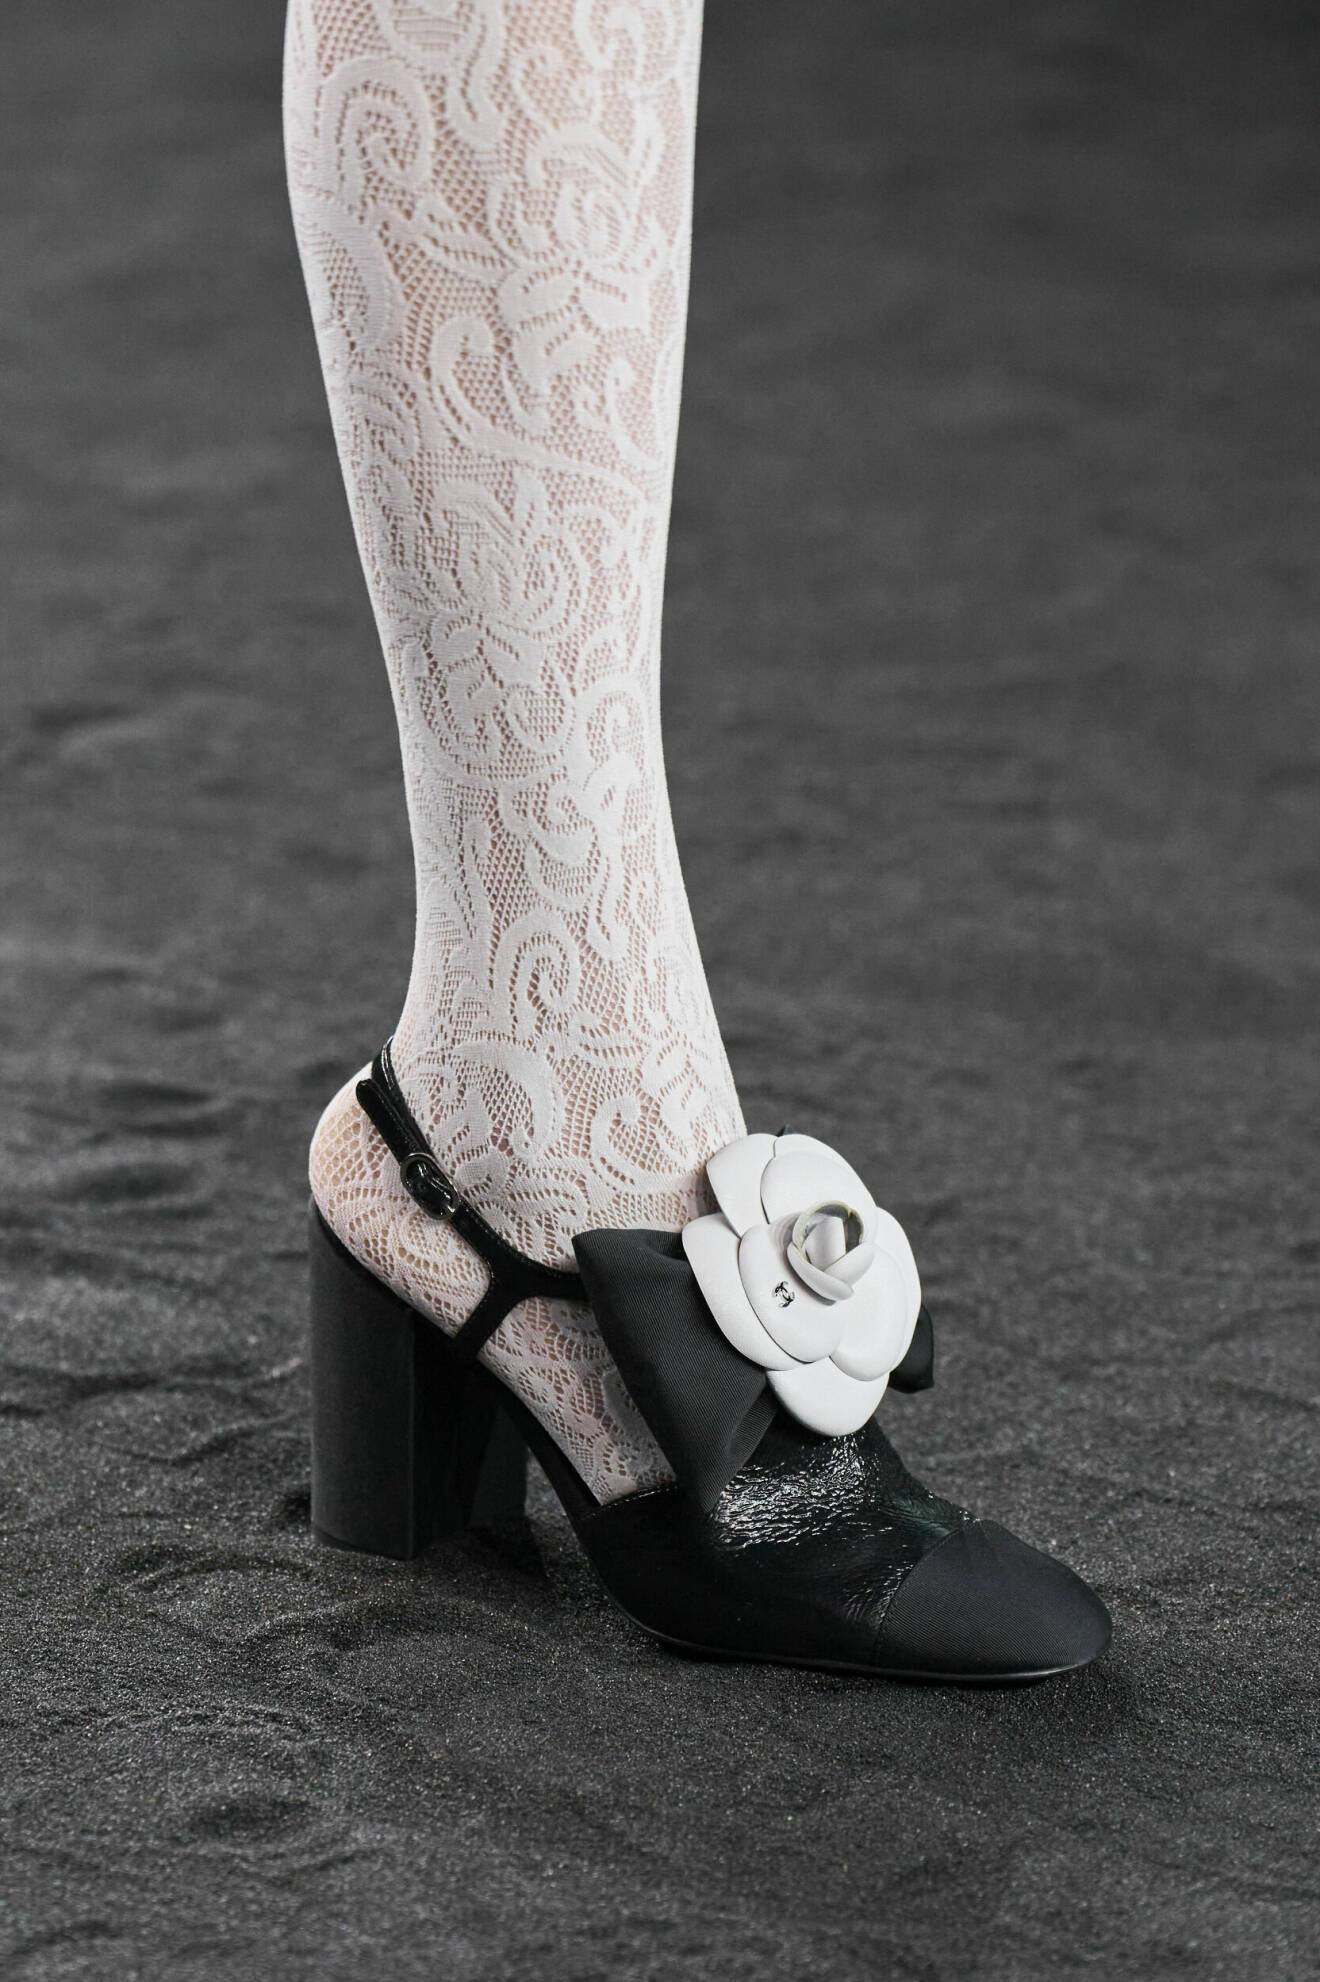 Chanel valde att göra en twist av rosetta trenden genom att applicera deras signatur ros på skon.